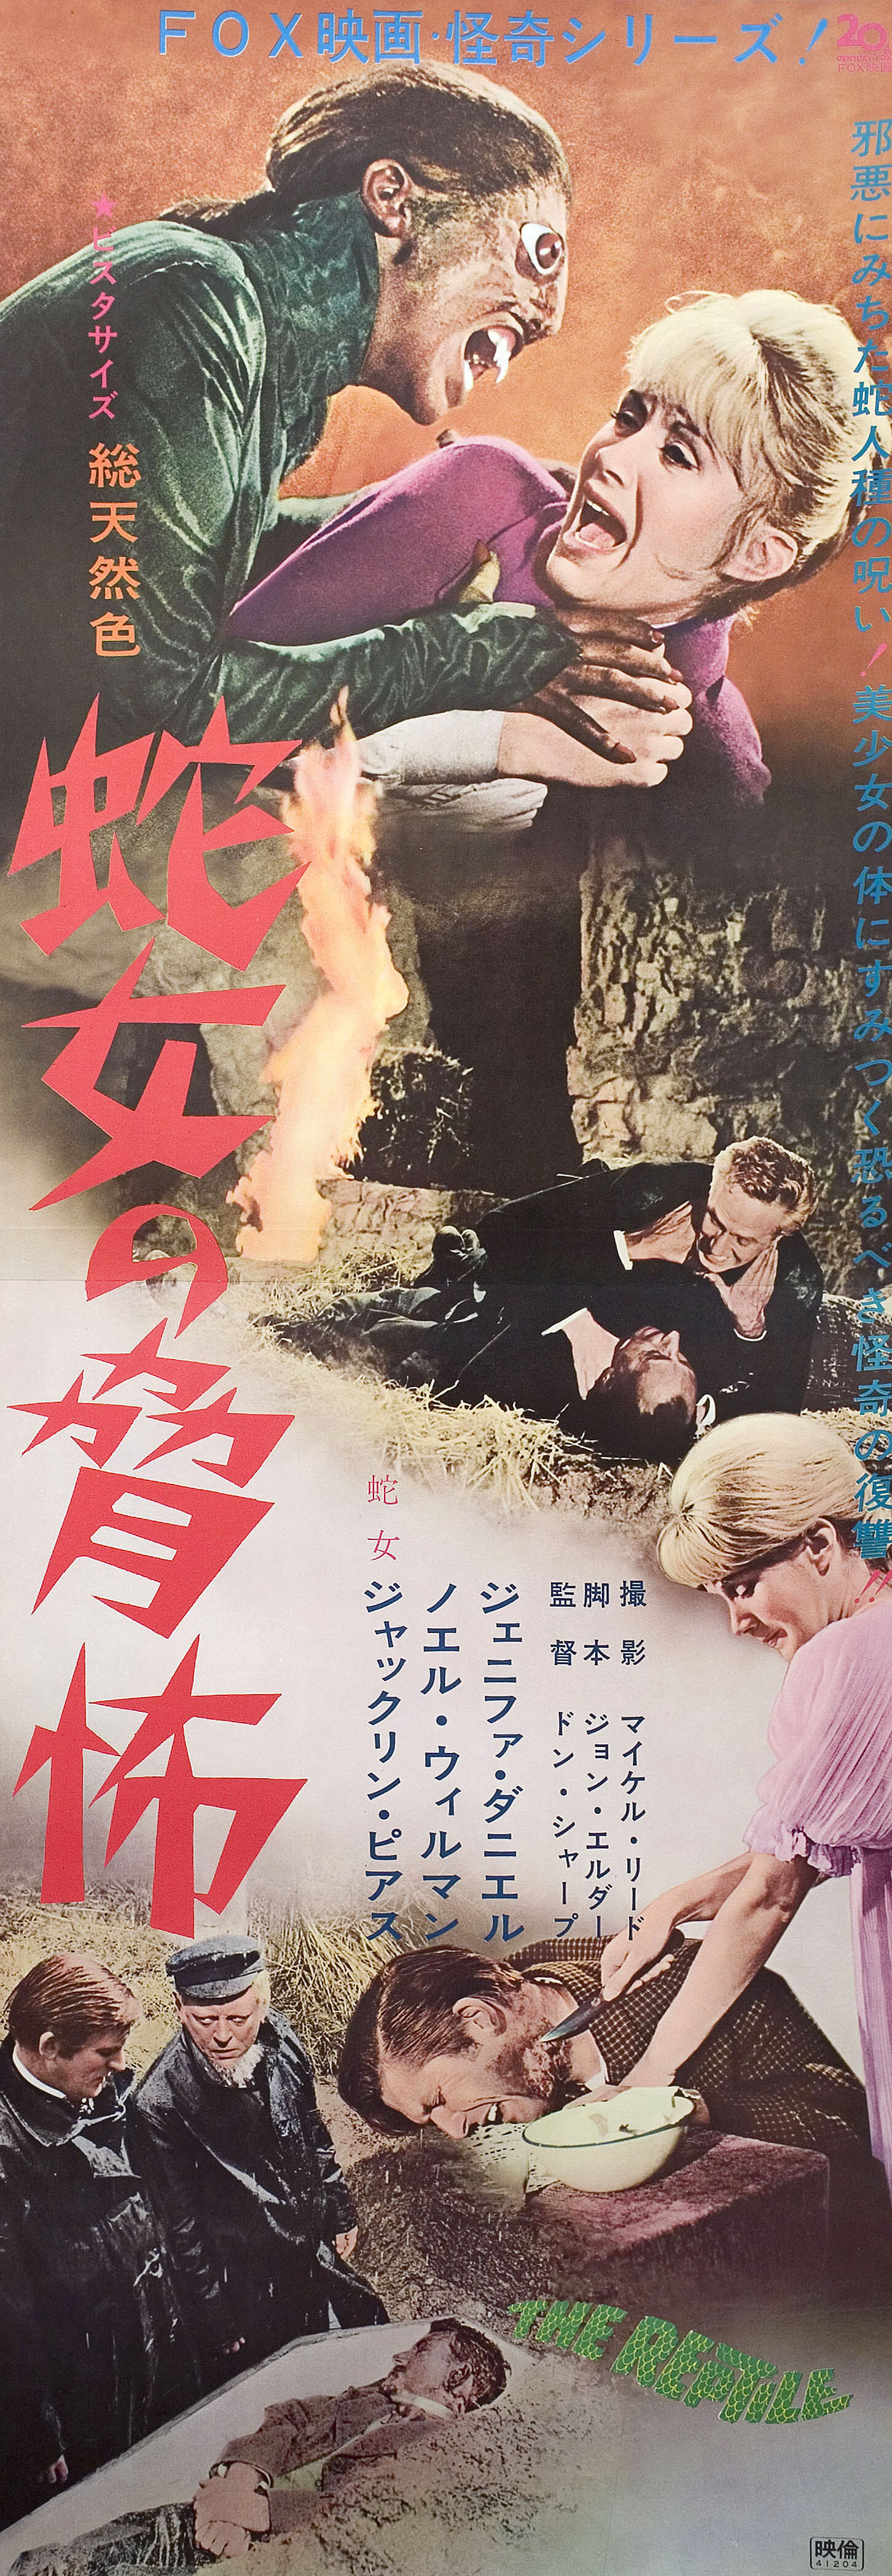 Рептилия (The Reptile, 1966), режиссёр Джон Джиллинг, японский постер к фильму (Hummer horror, 1966 год)